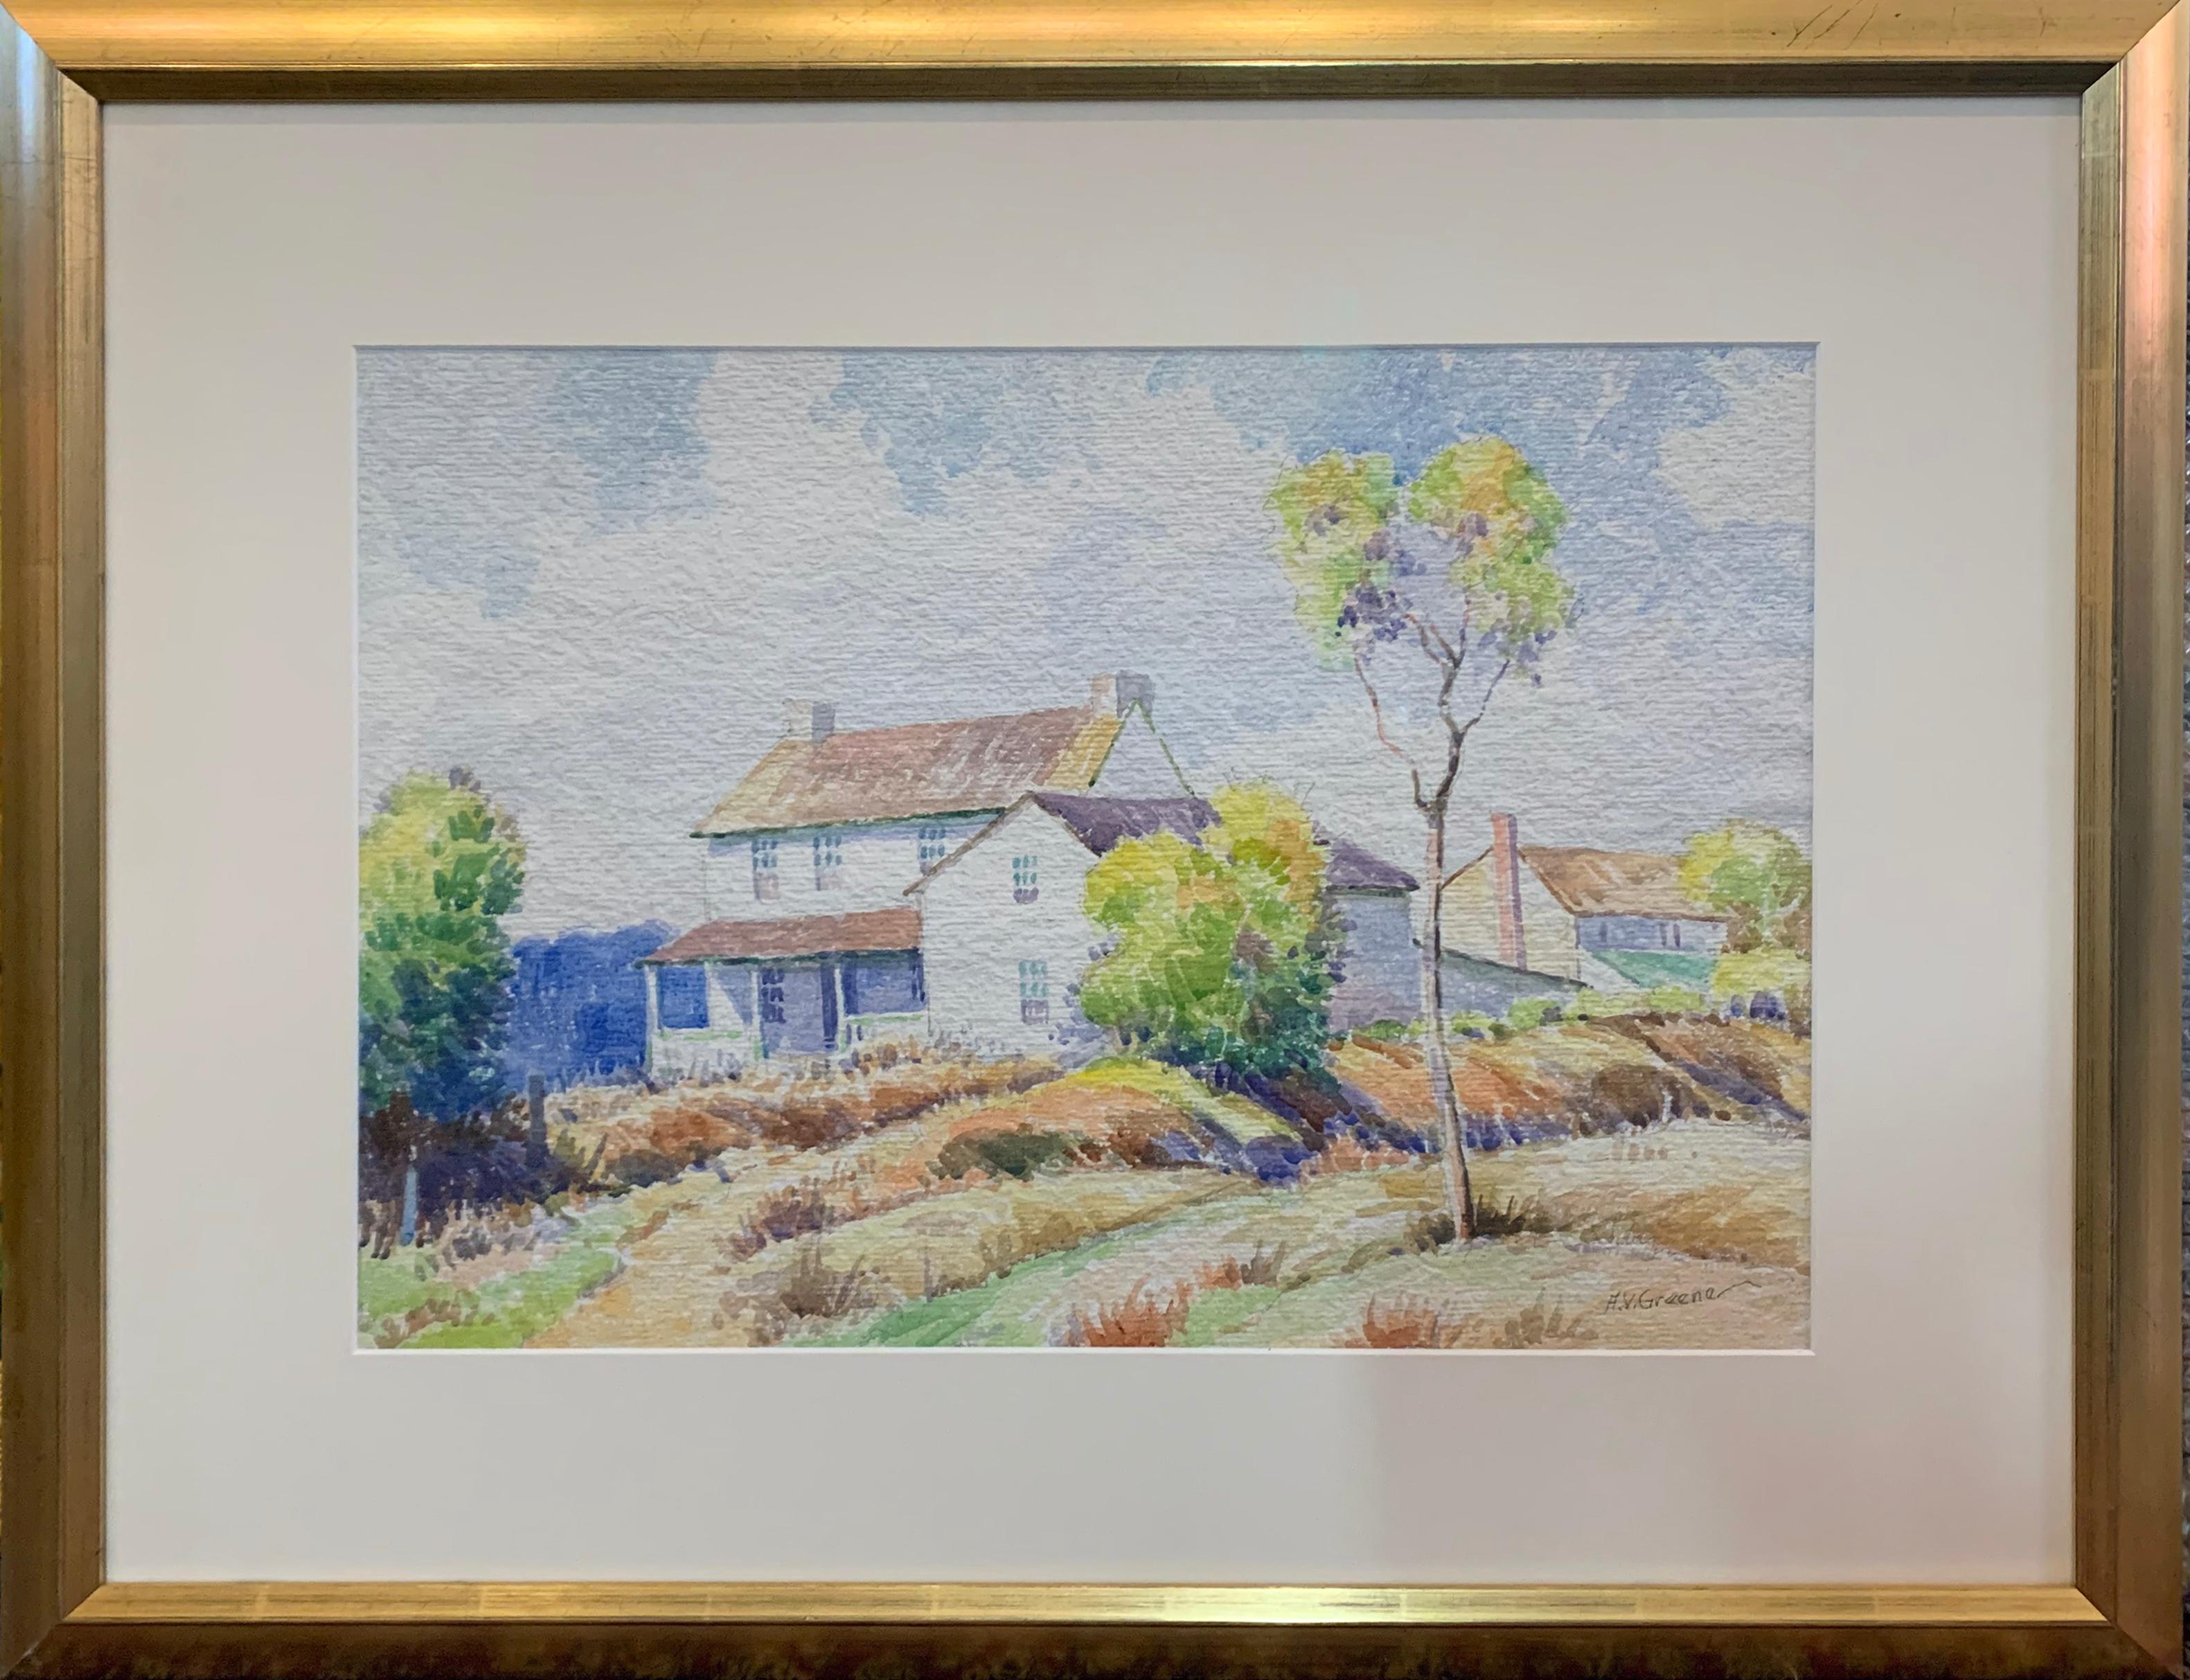 Pennsylvania Farmhouse, American Impressionist Landscape, Watercolor on Paper